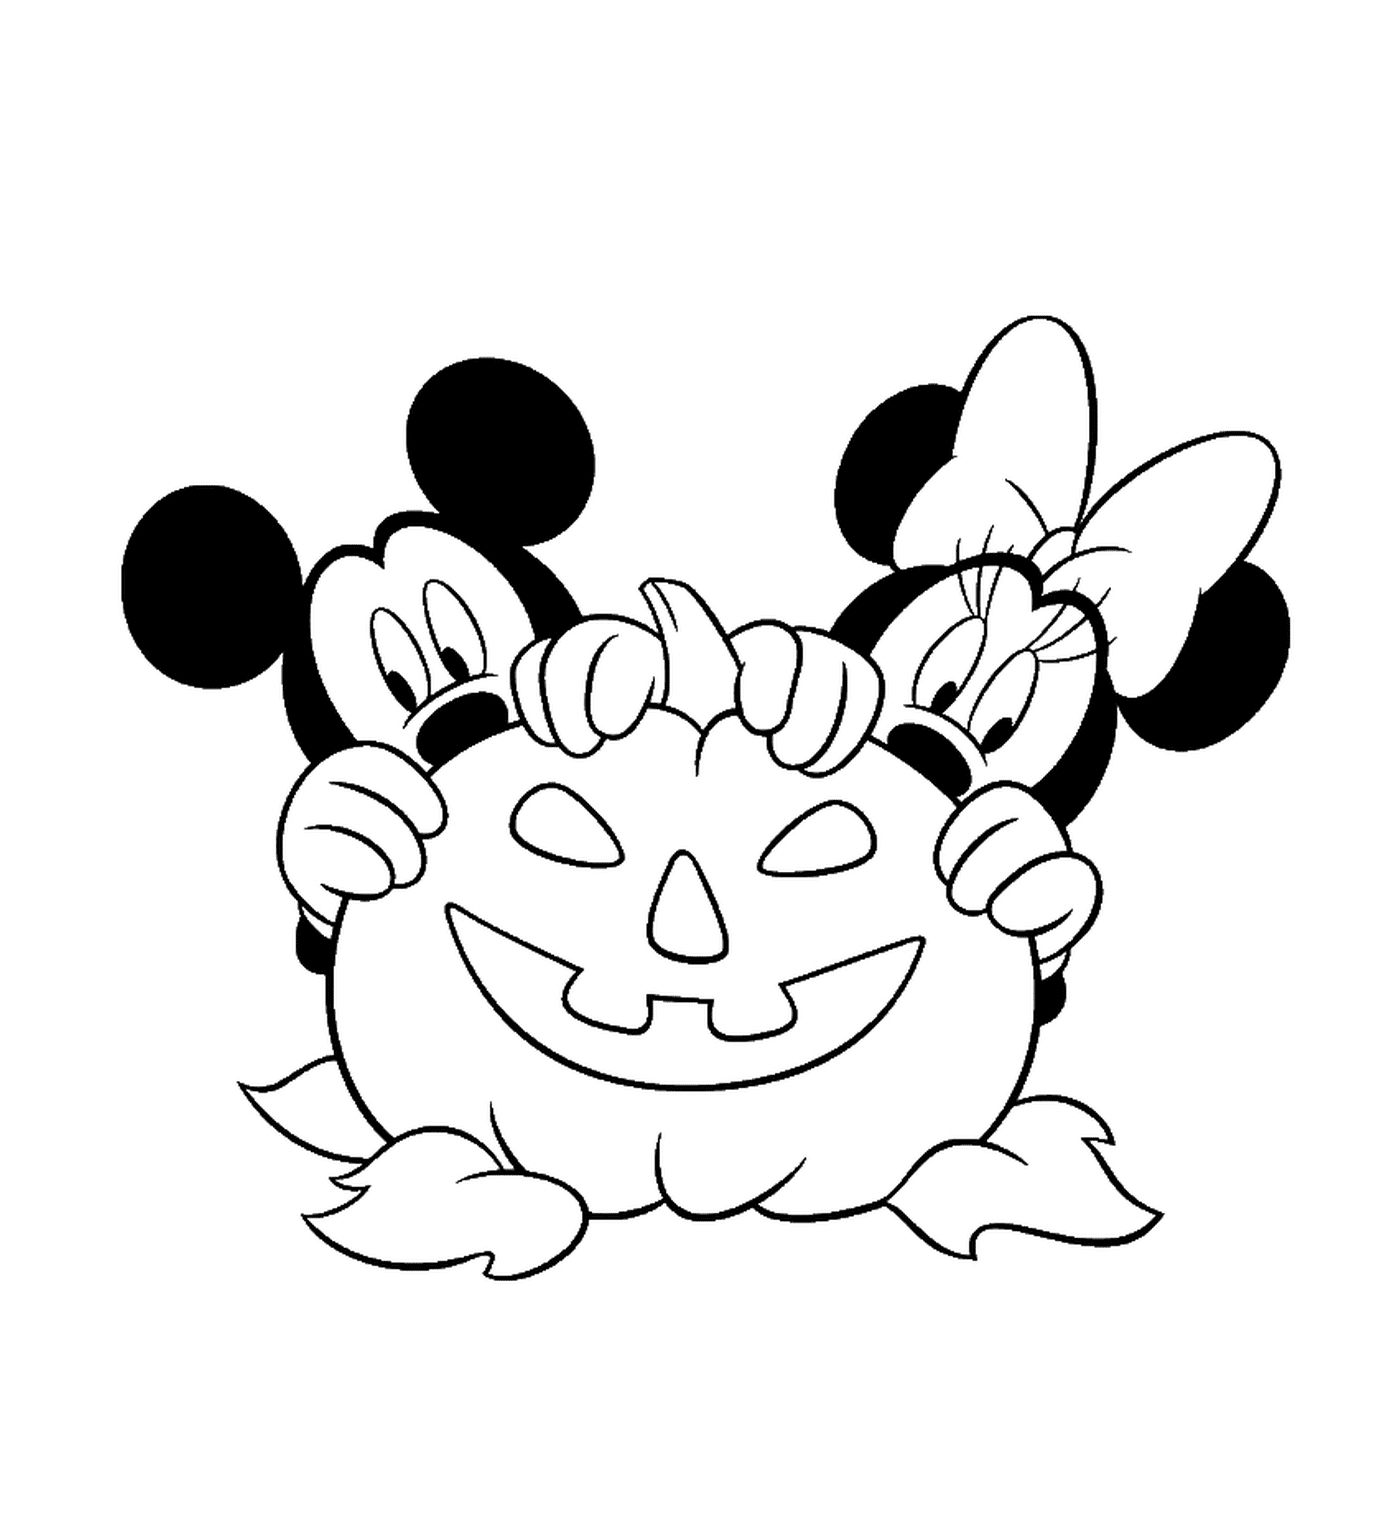  Mickey und Minnie versteckten sich hinter einem Kürbis 